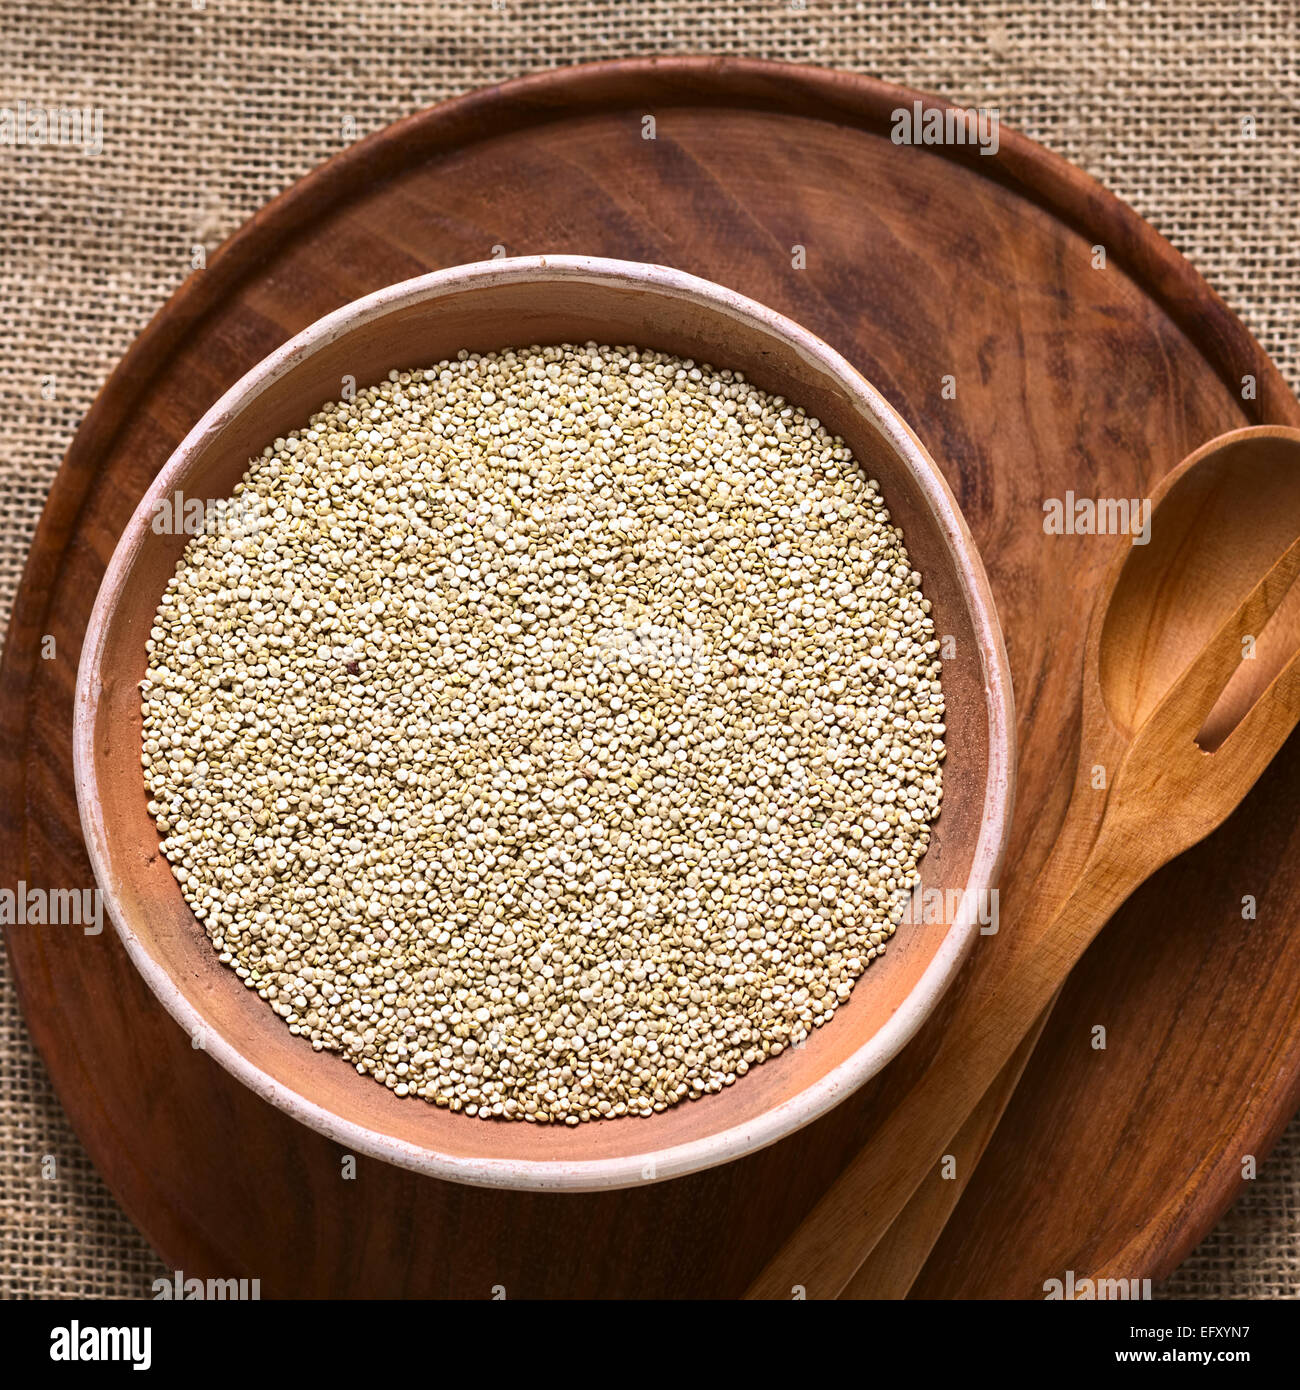 Roh weiß Quinoa (Chenopodium Quinoa lat.) Getreide Samen in Schüssel mit Tageslicht fotografiert Stockfoto